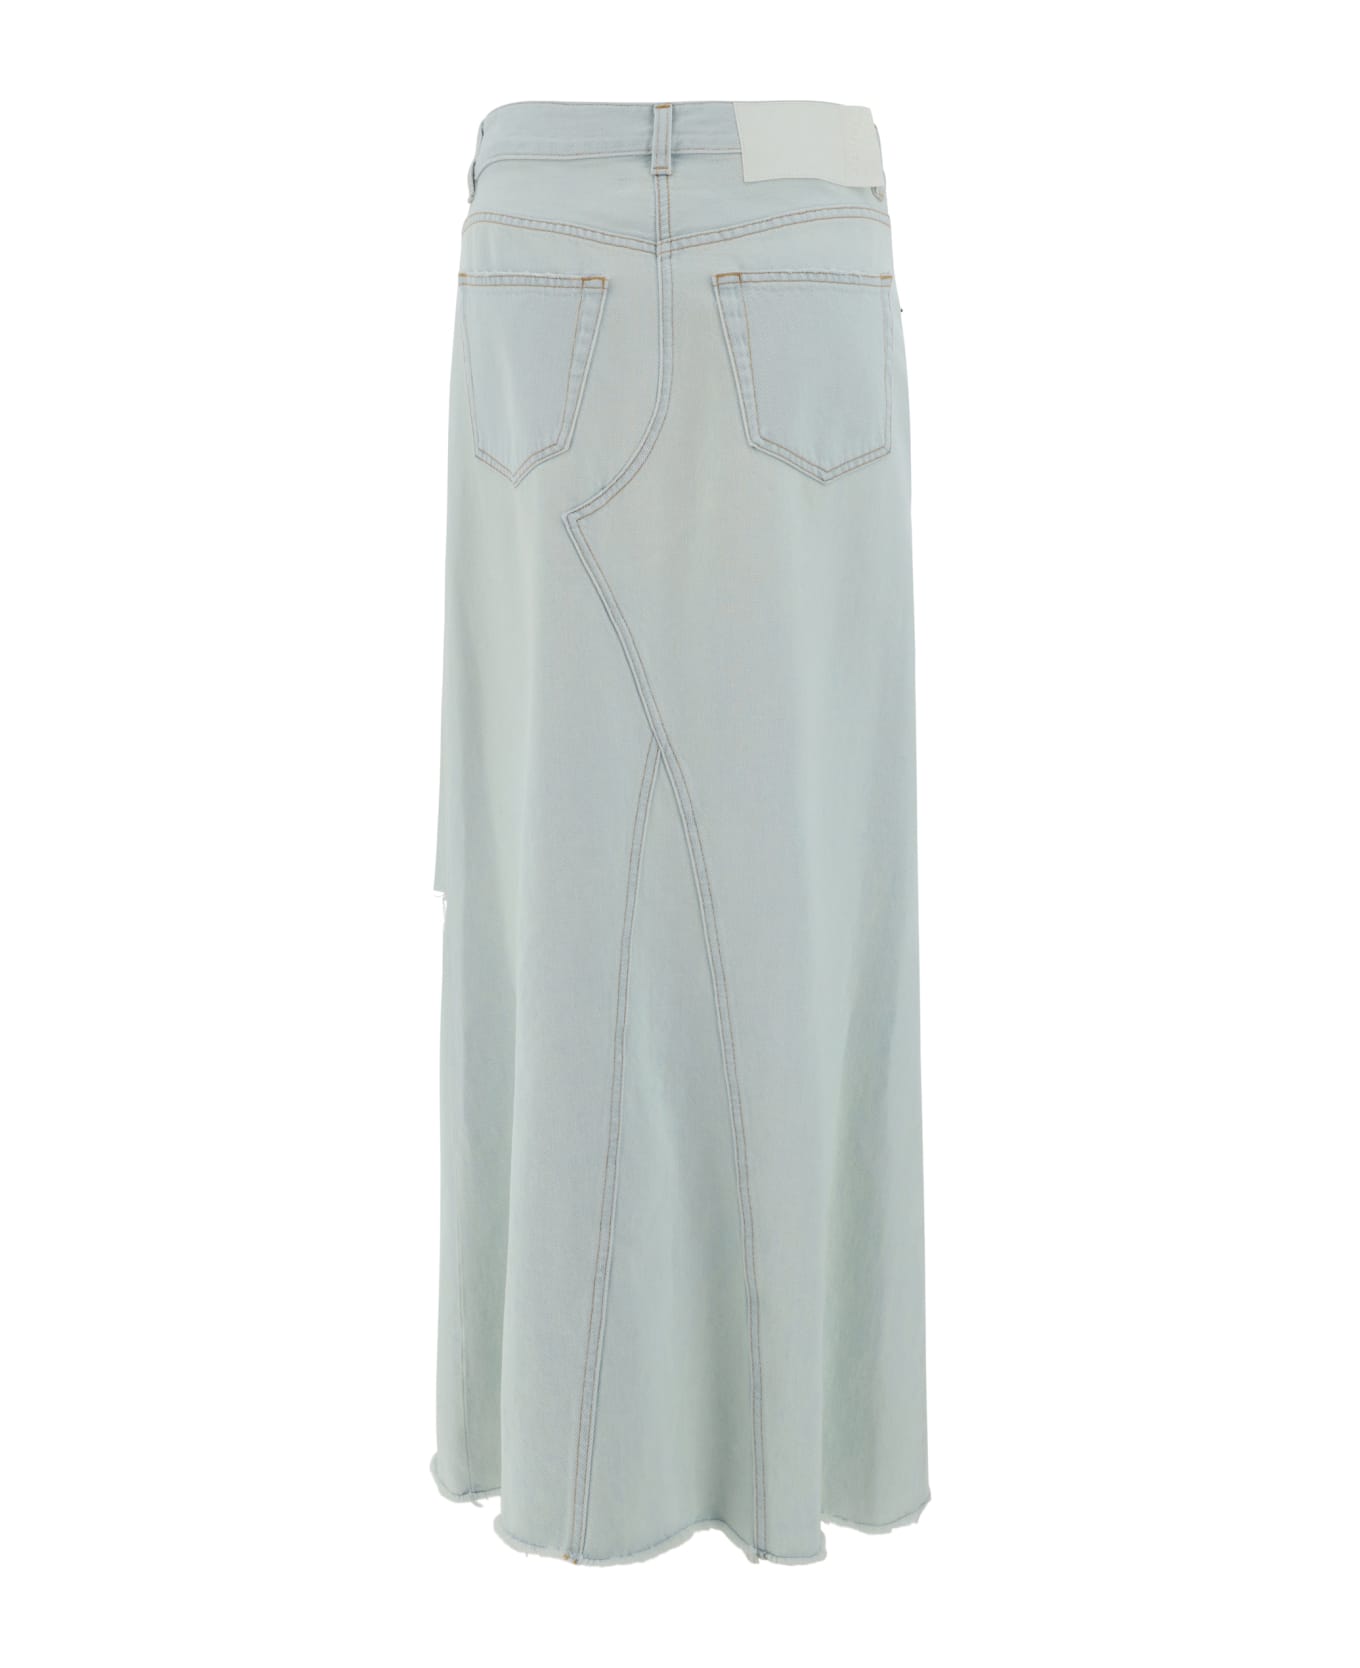 MM6 Maison Margiela Denim Long Skirt - Light blue スカート